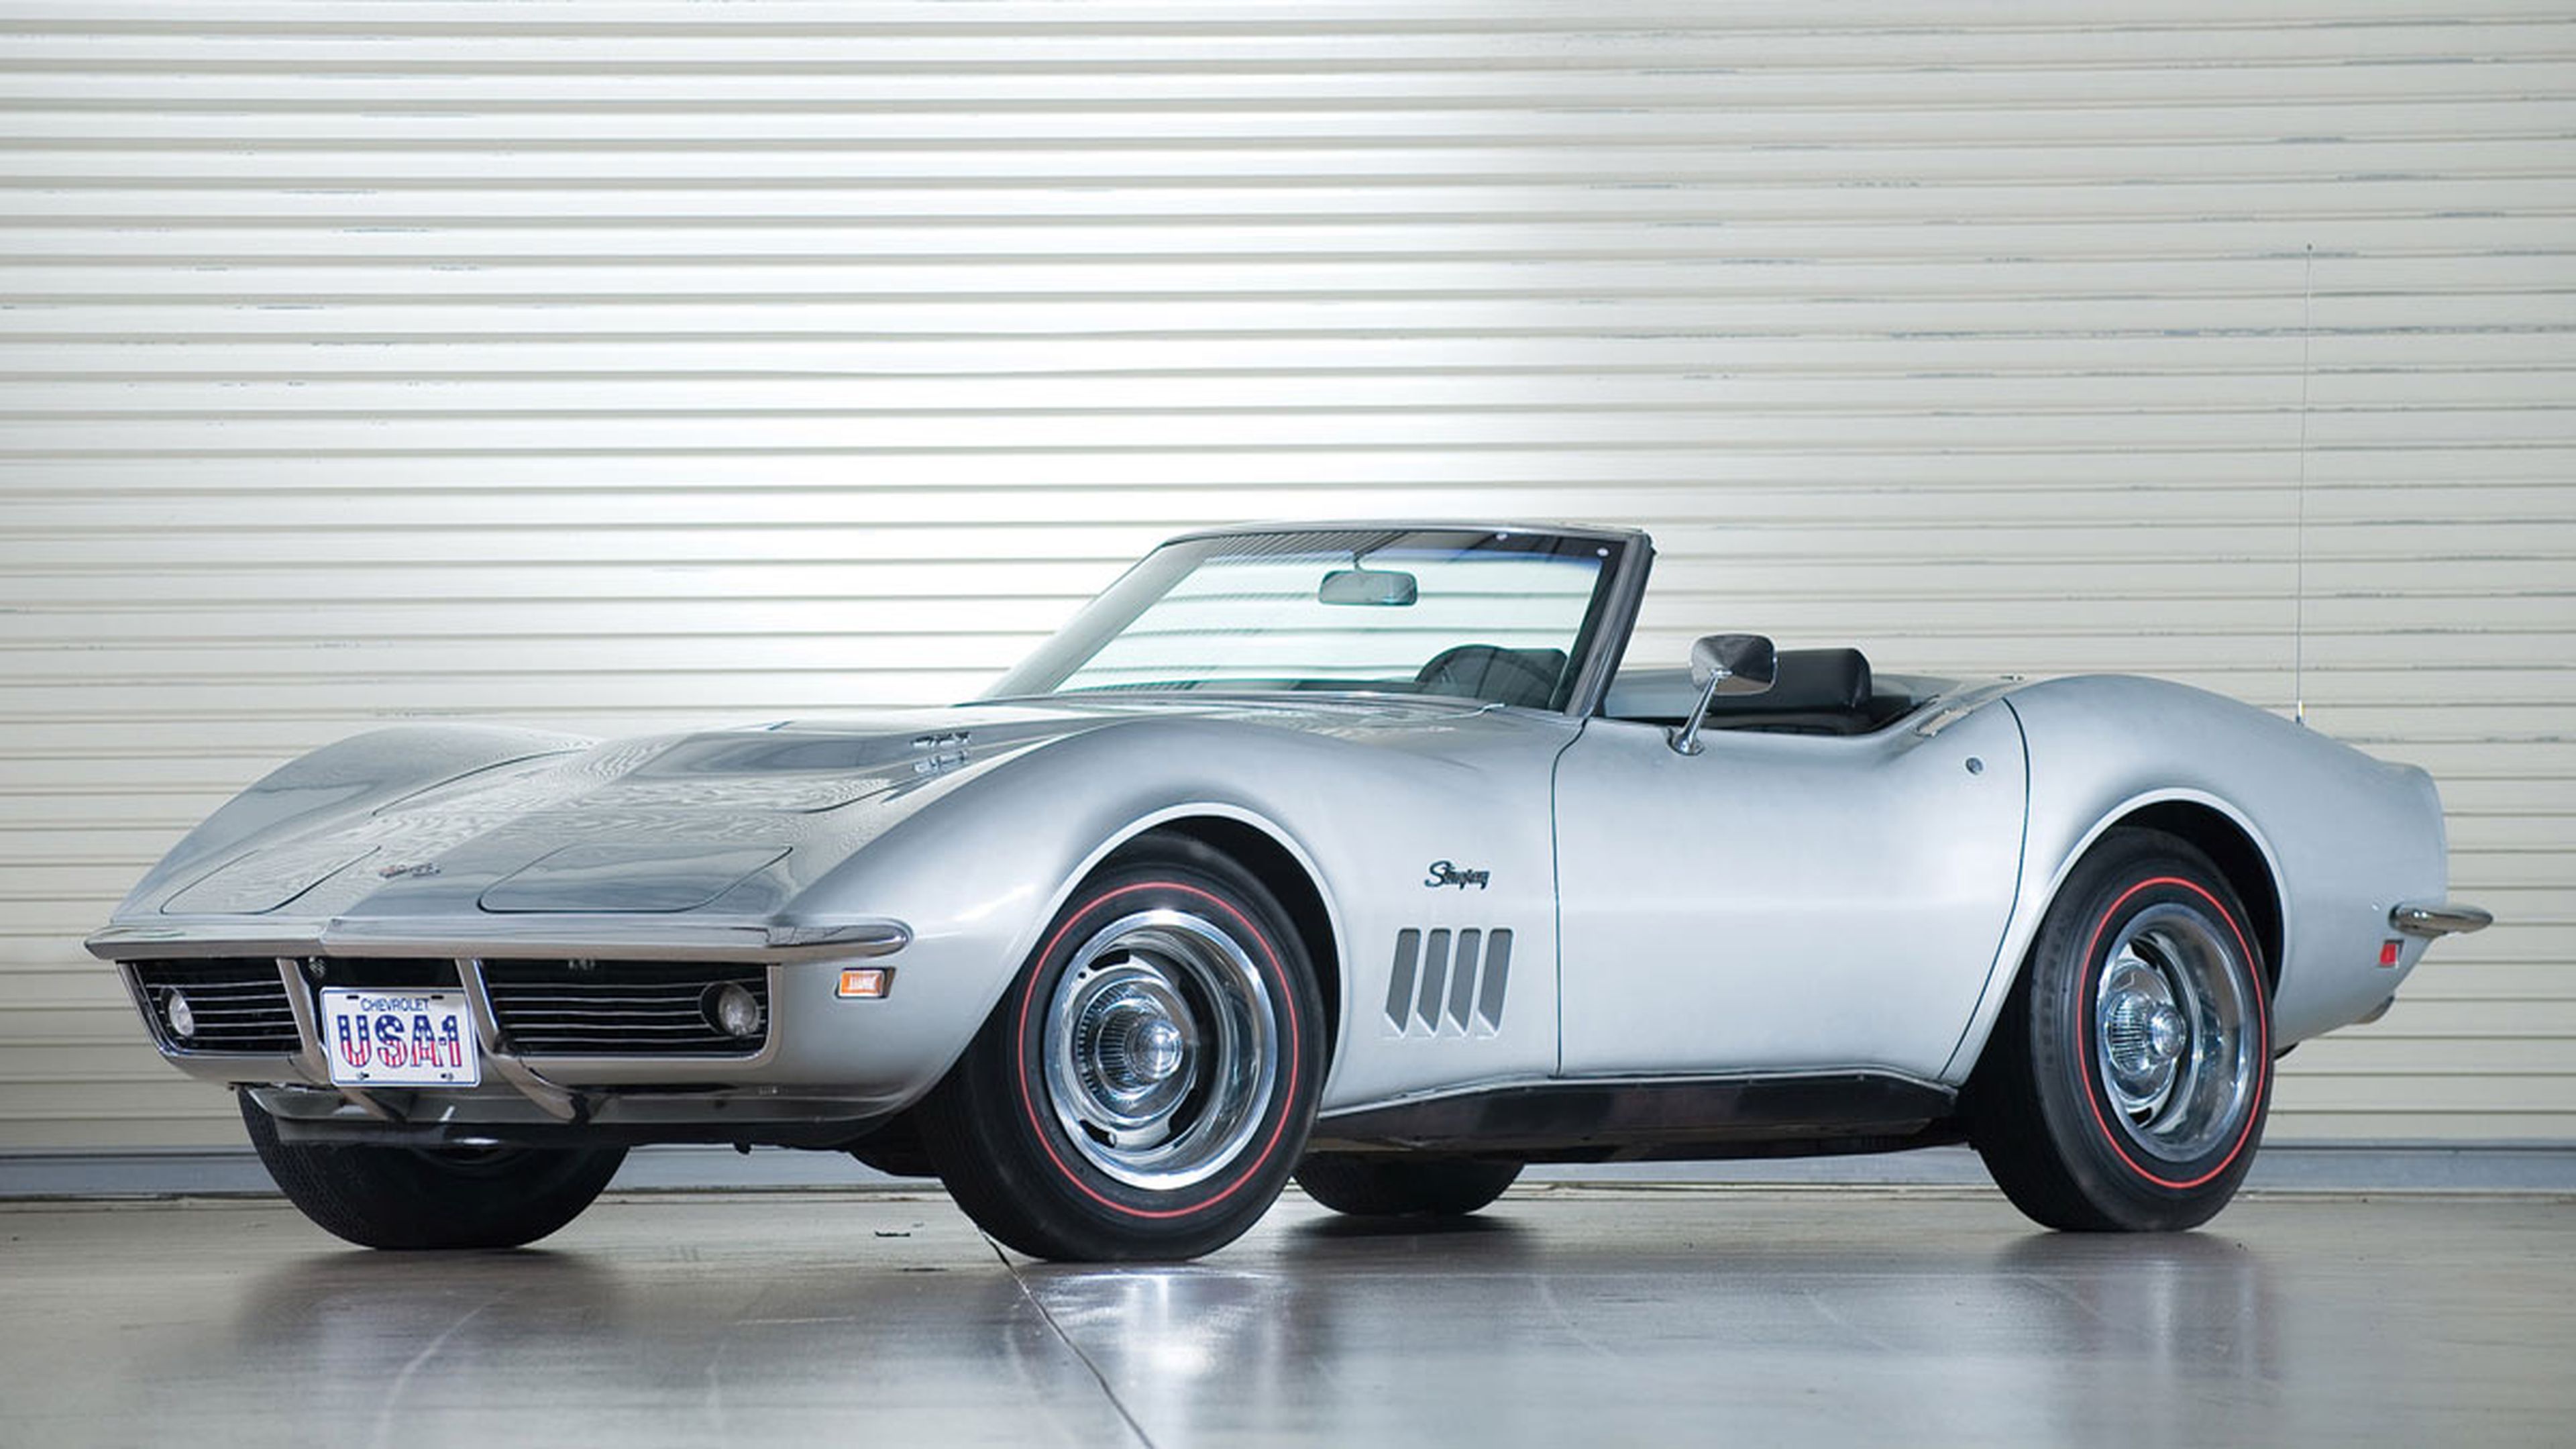 Este Corvette fue de Rambo y ahora puede ser tuyo